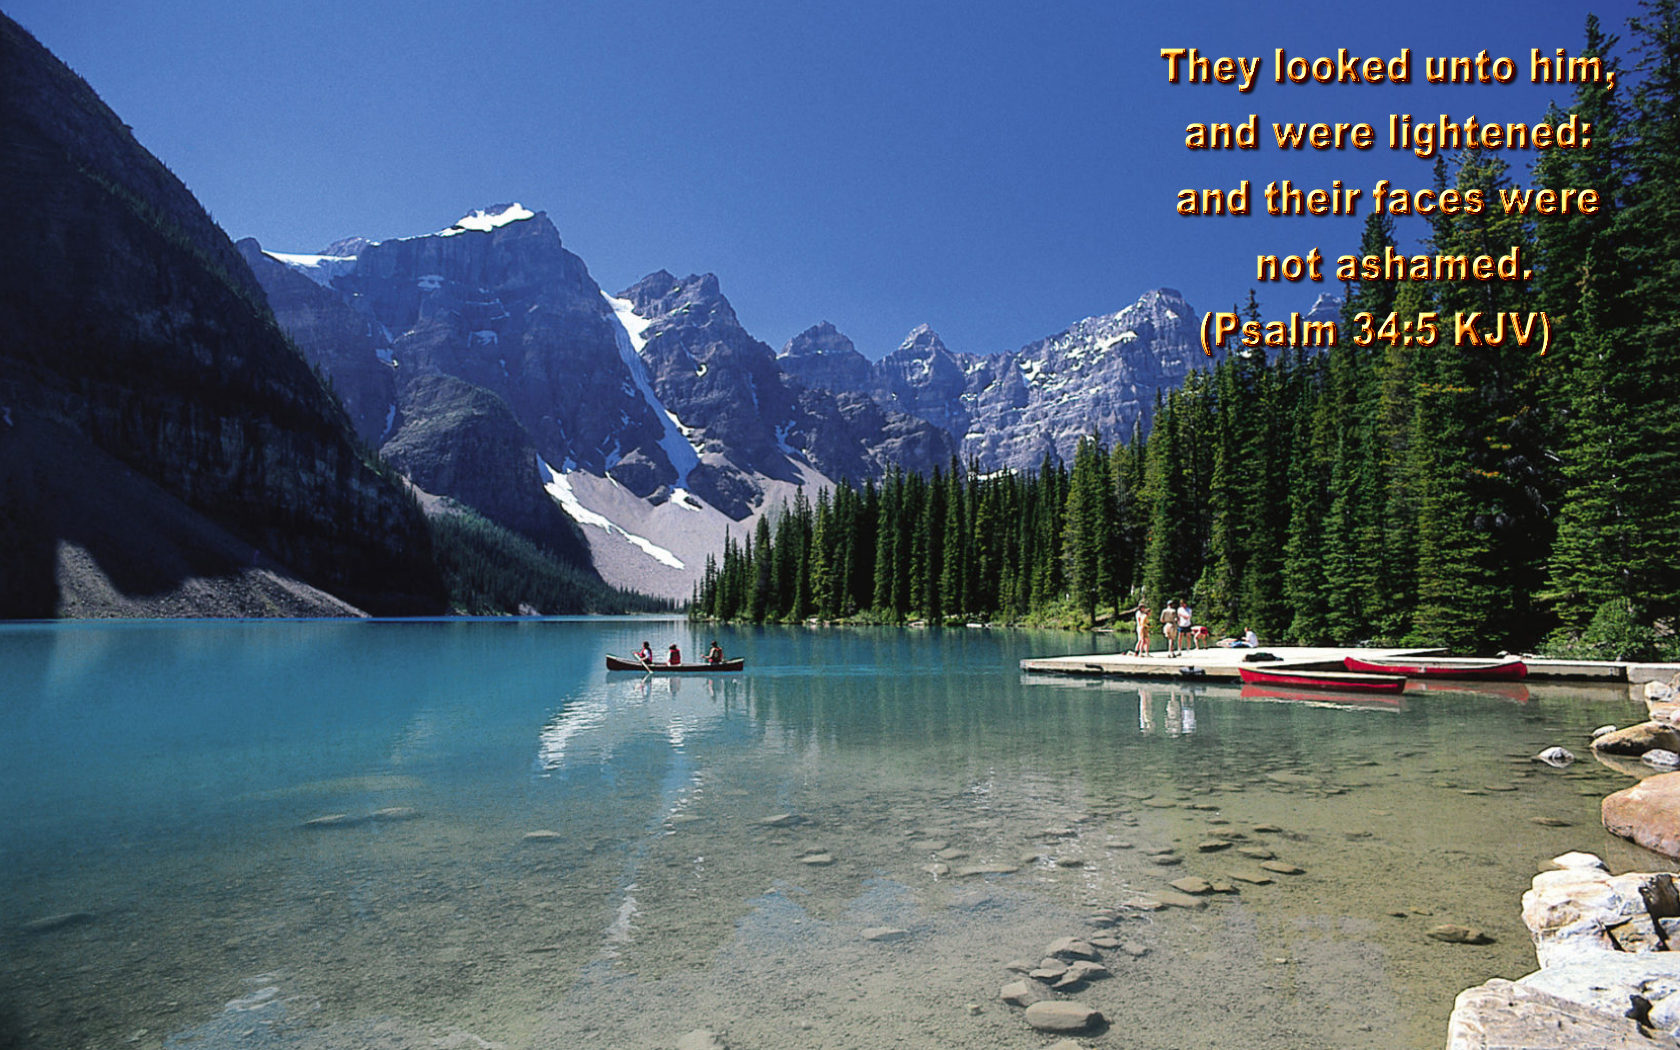 verso de la biblia fondo de pantalla,paisaje natural,montaña,naturaleza,lago glacial,agua